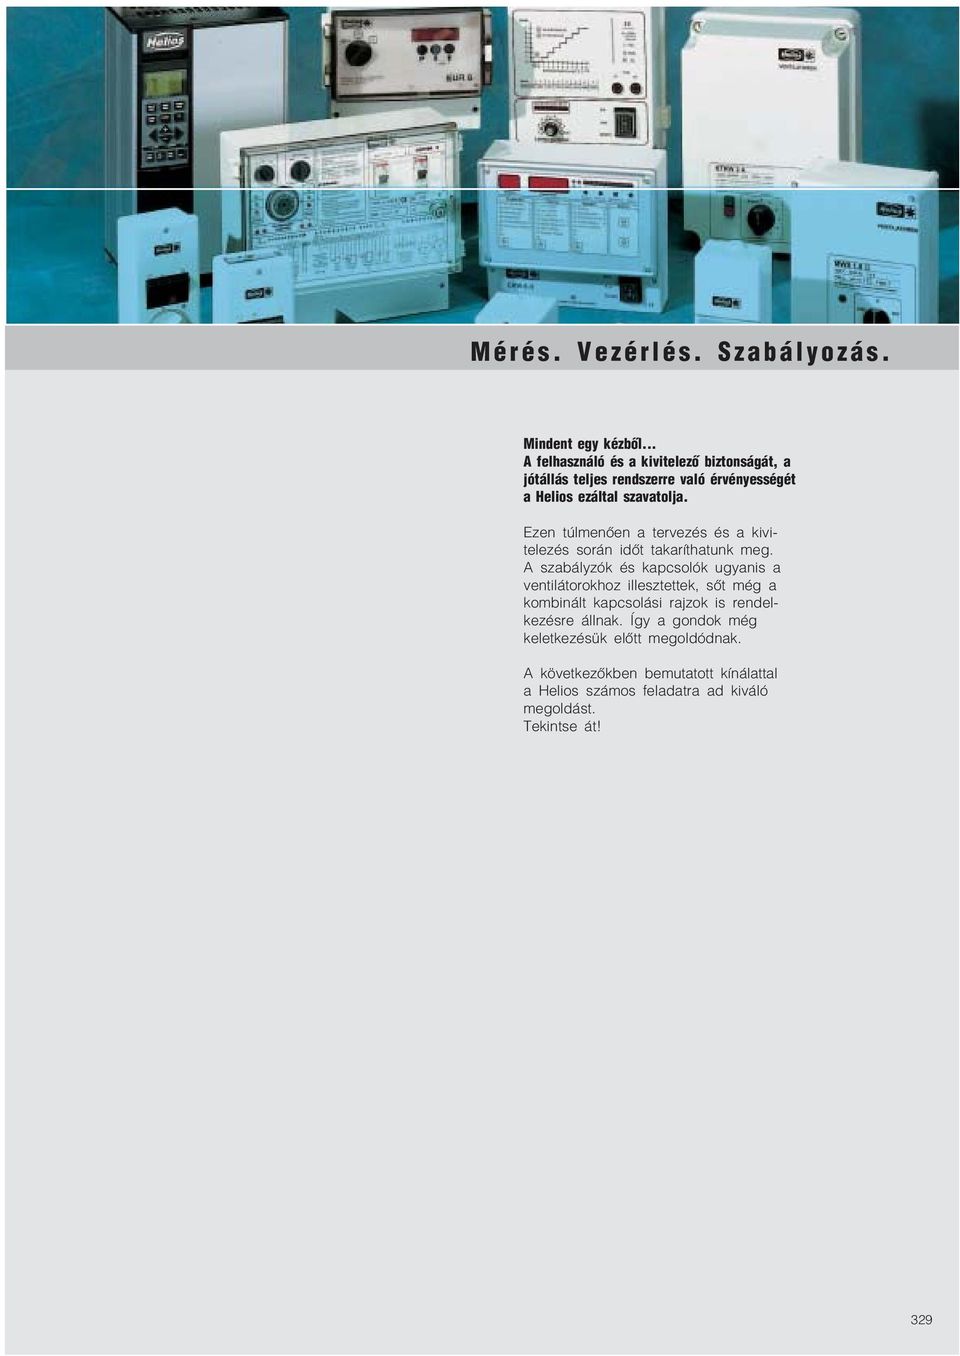 A ventilátorok működtetéséhez a HELIOS a kép szerinti szabályzó, vezérlő,  és kapcsoló készülékcsopor tokat kínálja. - PDF Ingyenes letöltés